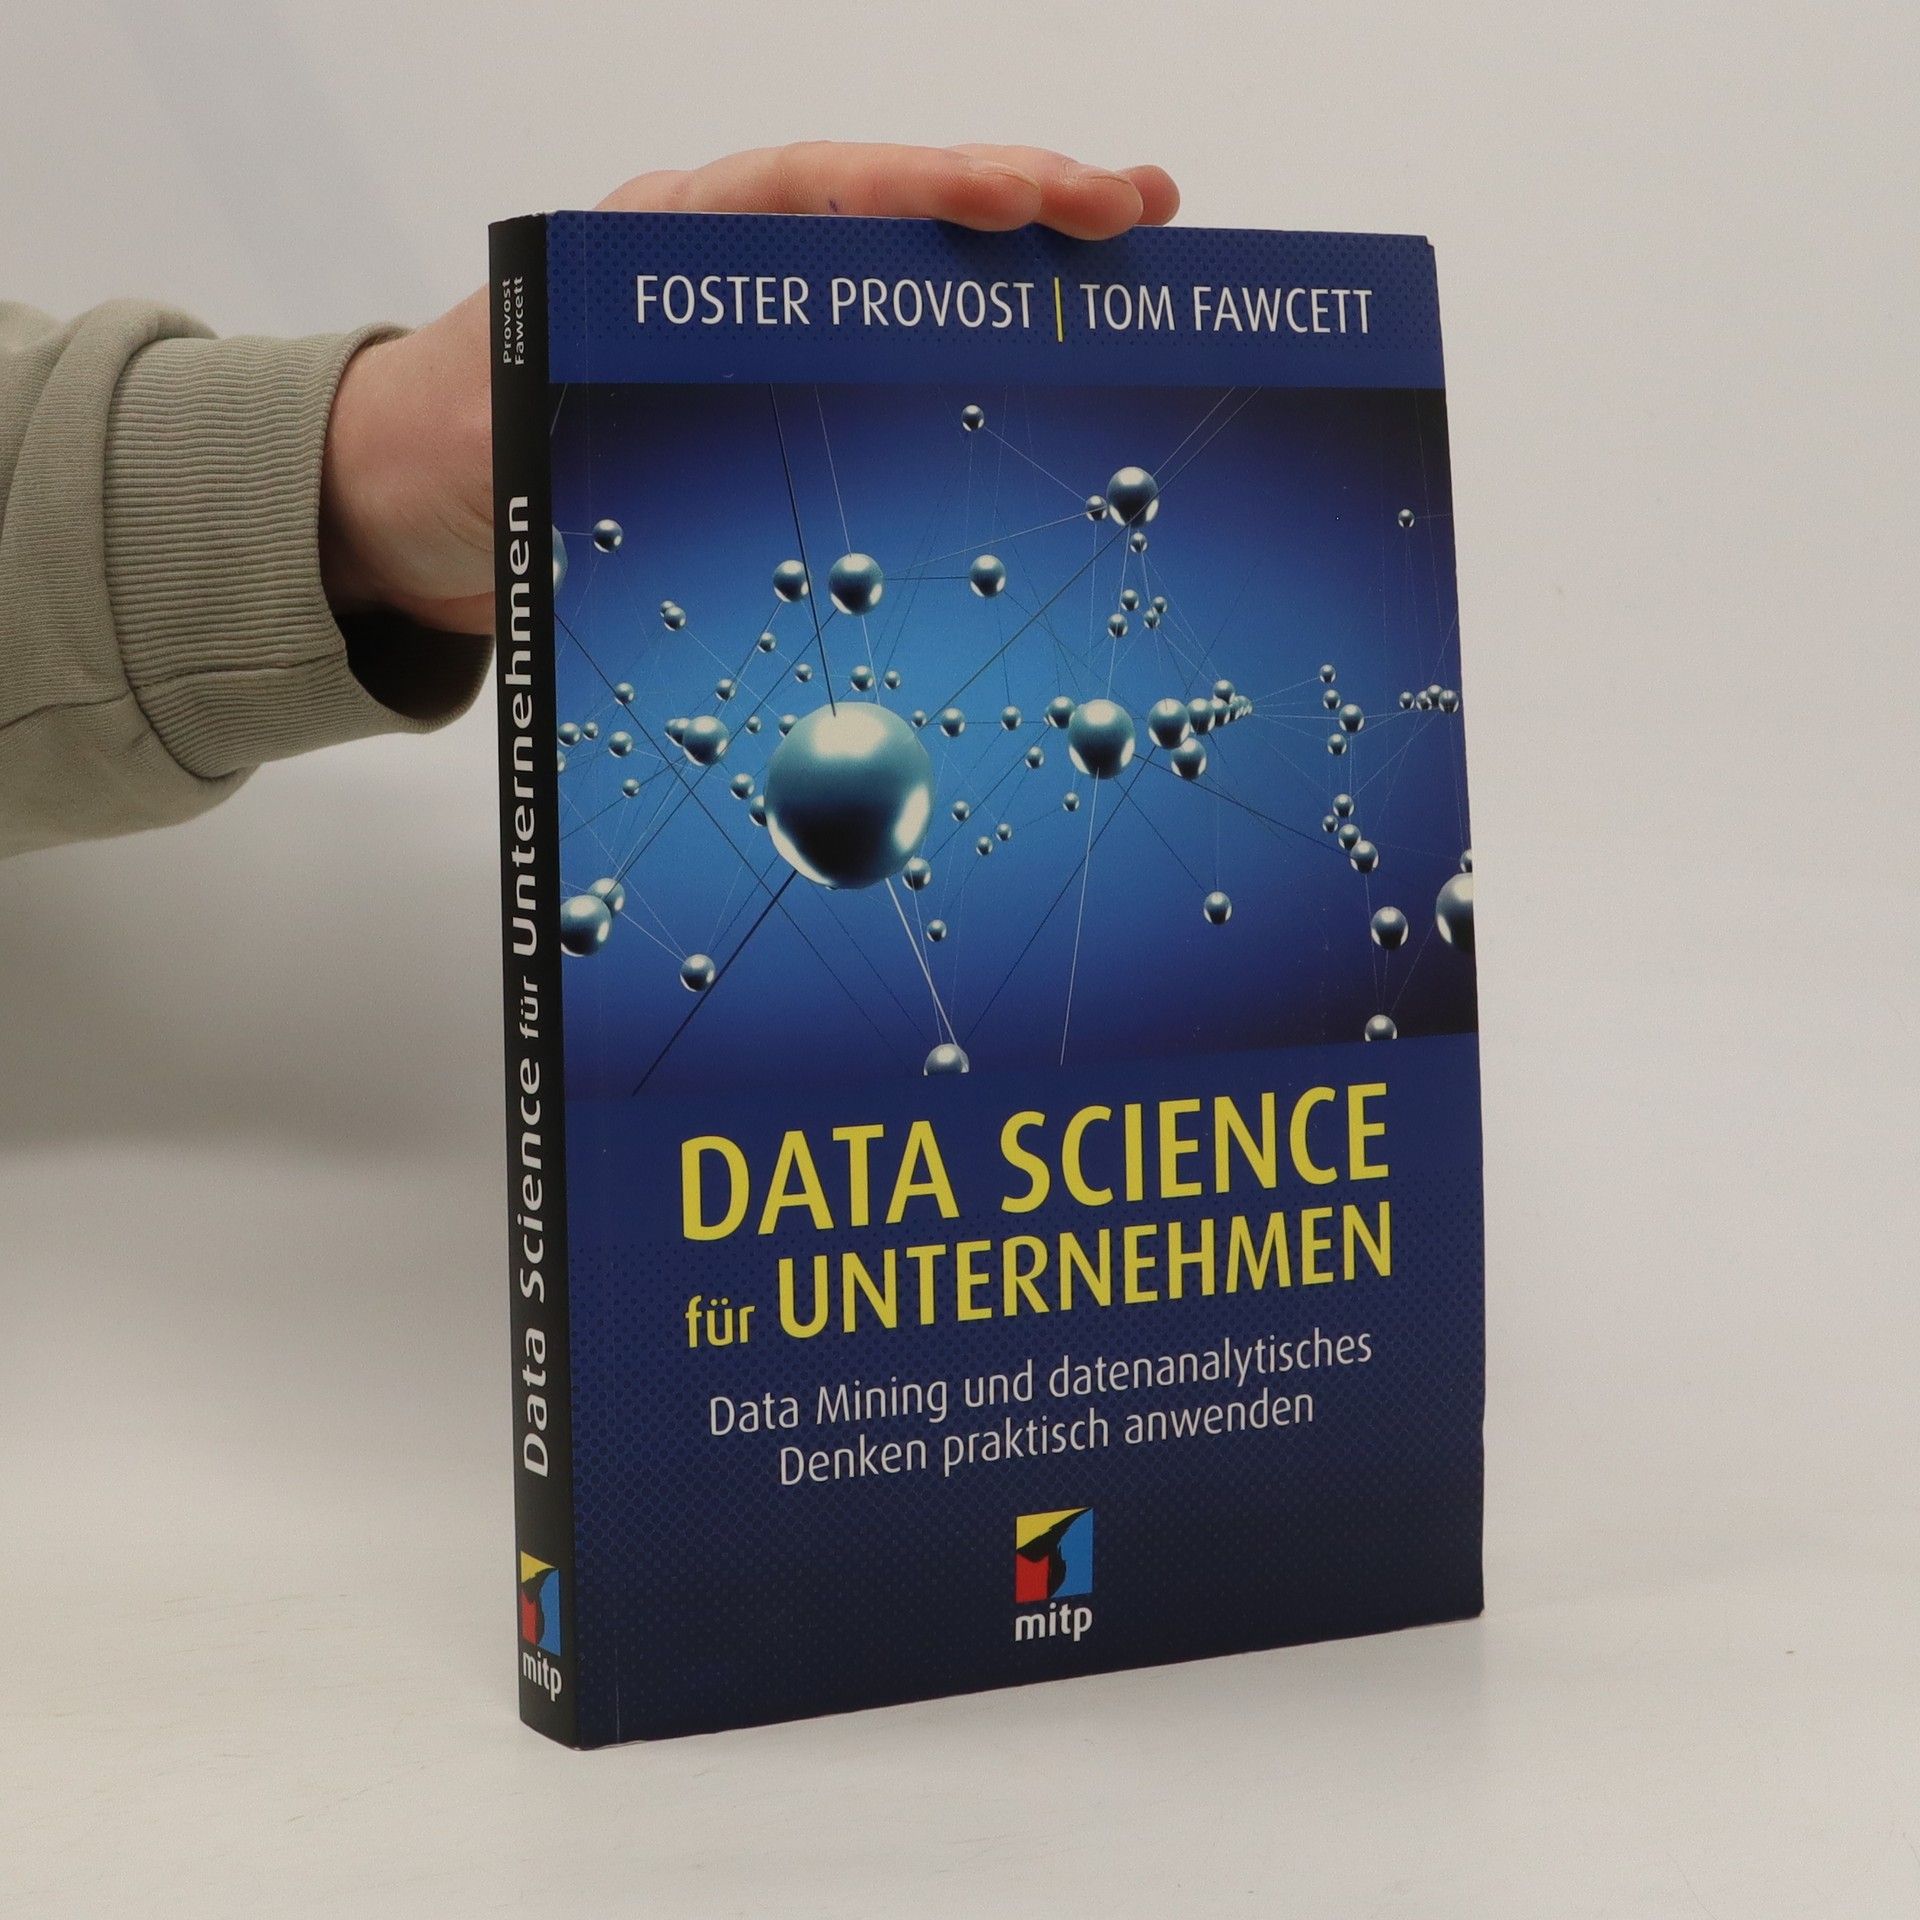 Data Science im Unternehmen - Foster Provost